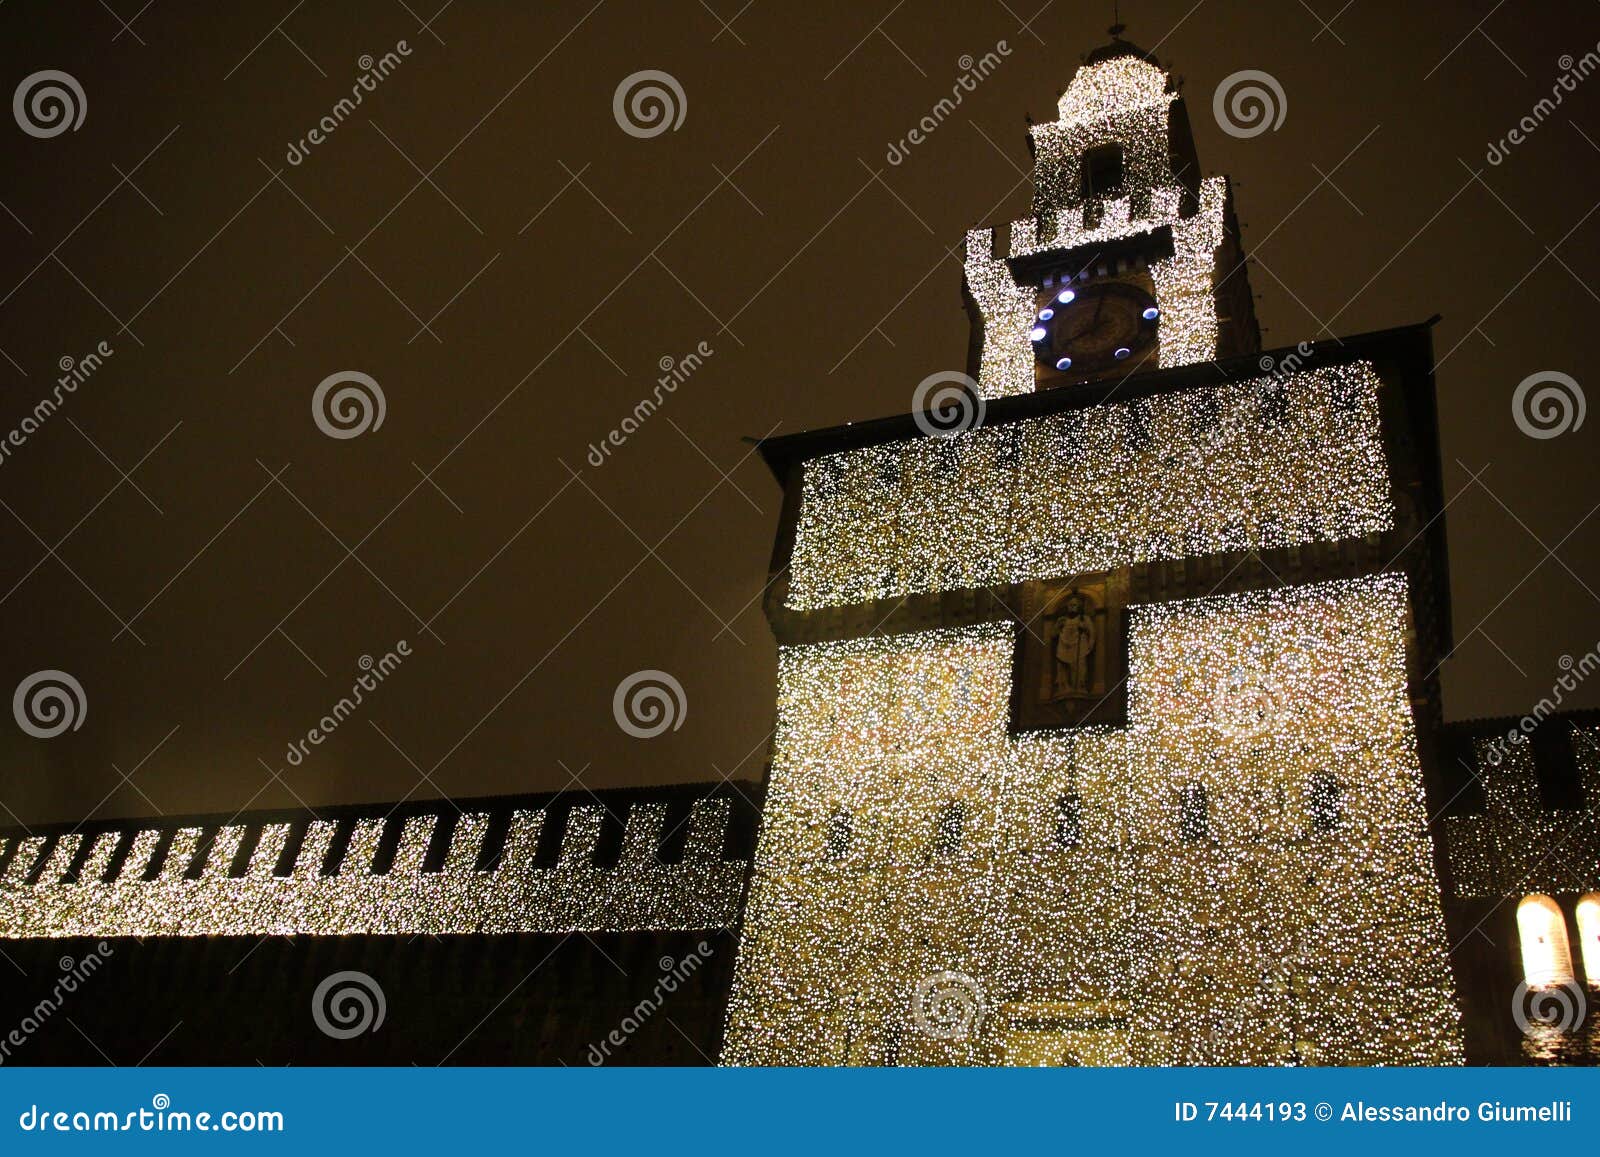 castel sforzesco - milano - four